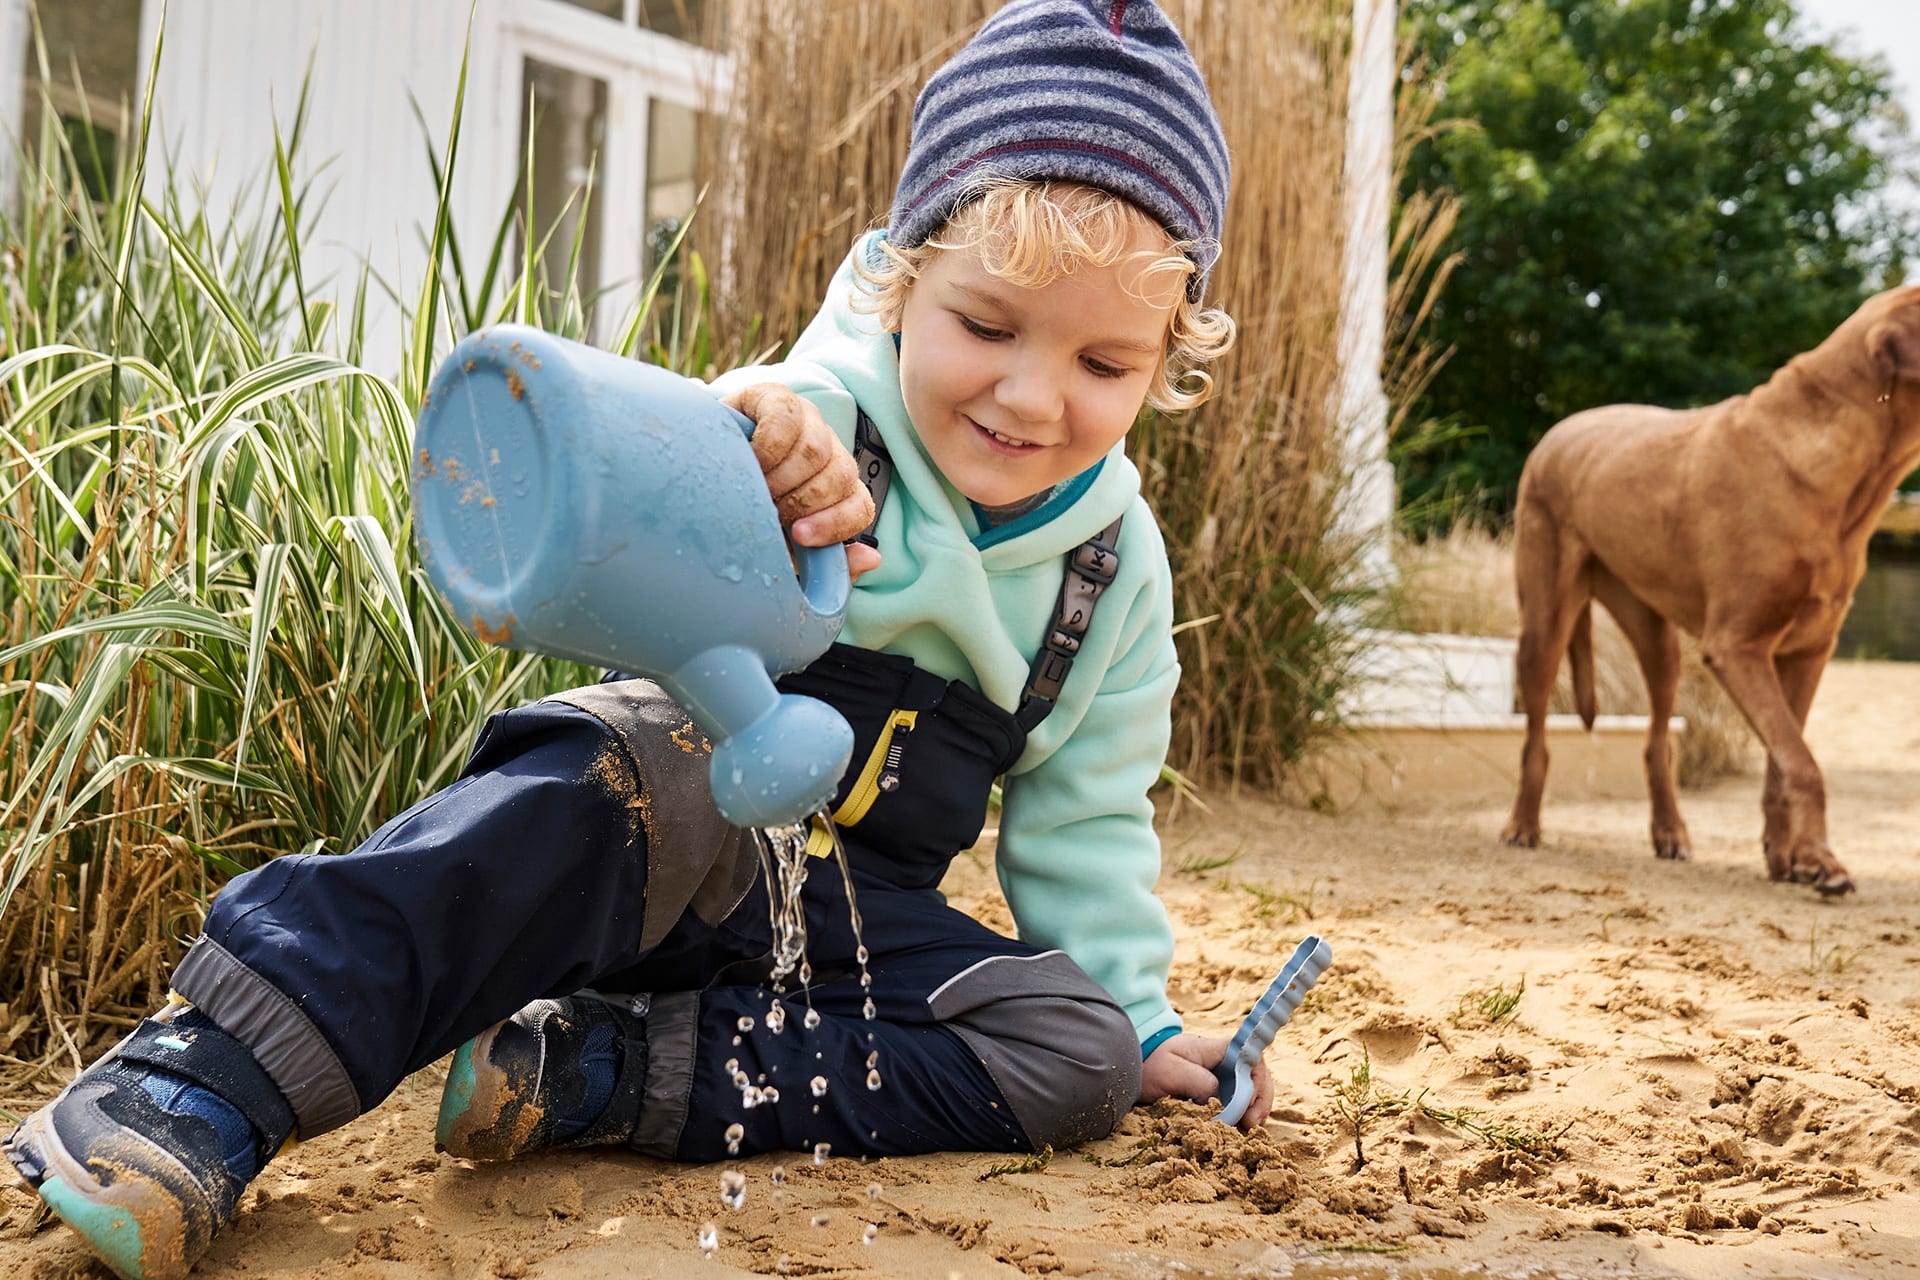 Spiele für draußen | Kind mit Matschhose, Fleeceshirt und Mütze, sitzt im Sand, hat einen Wassergießer in der Hand.